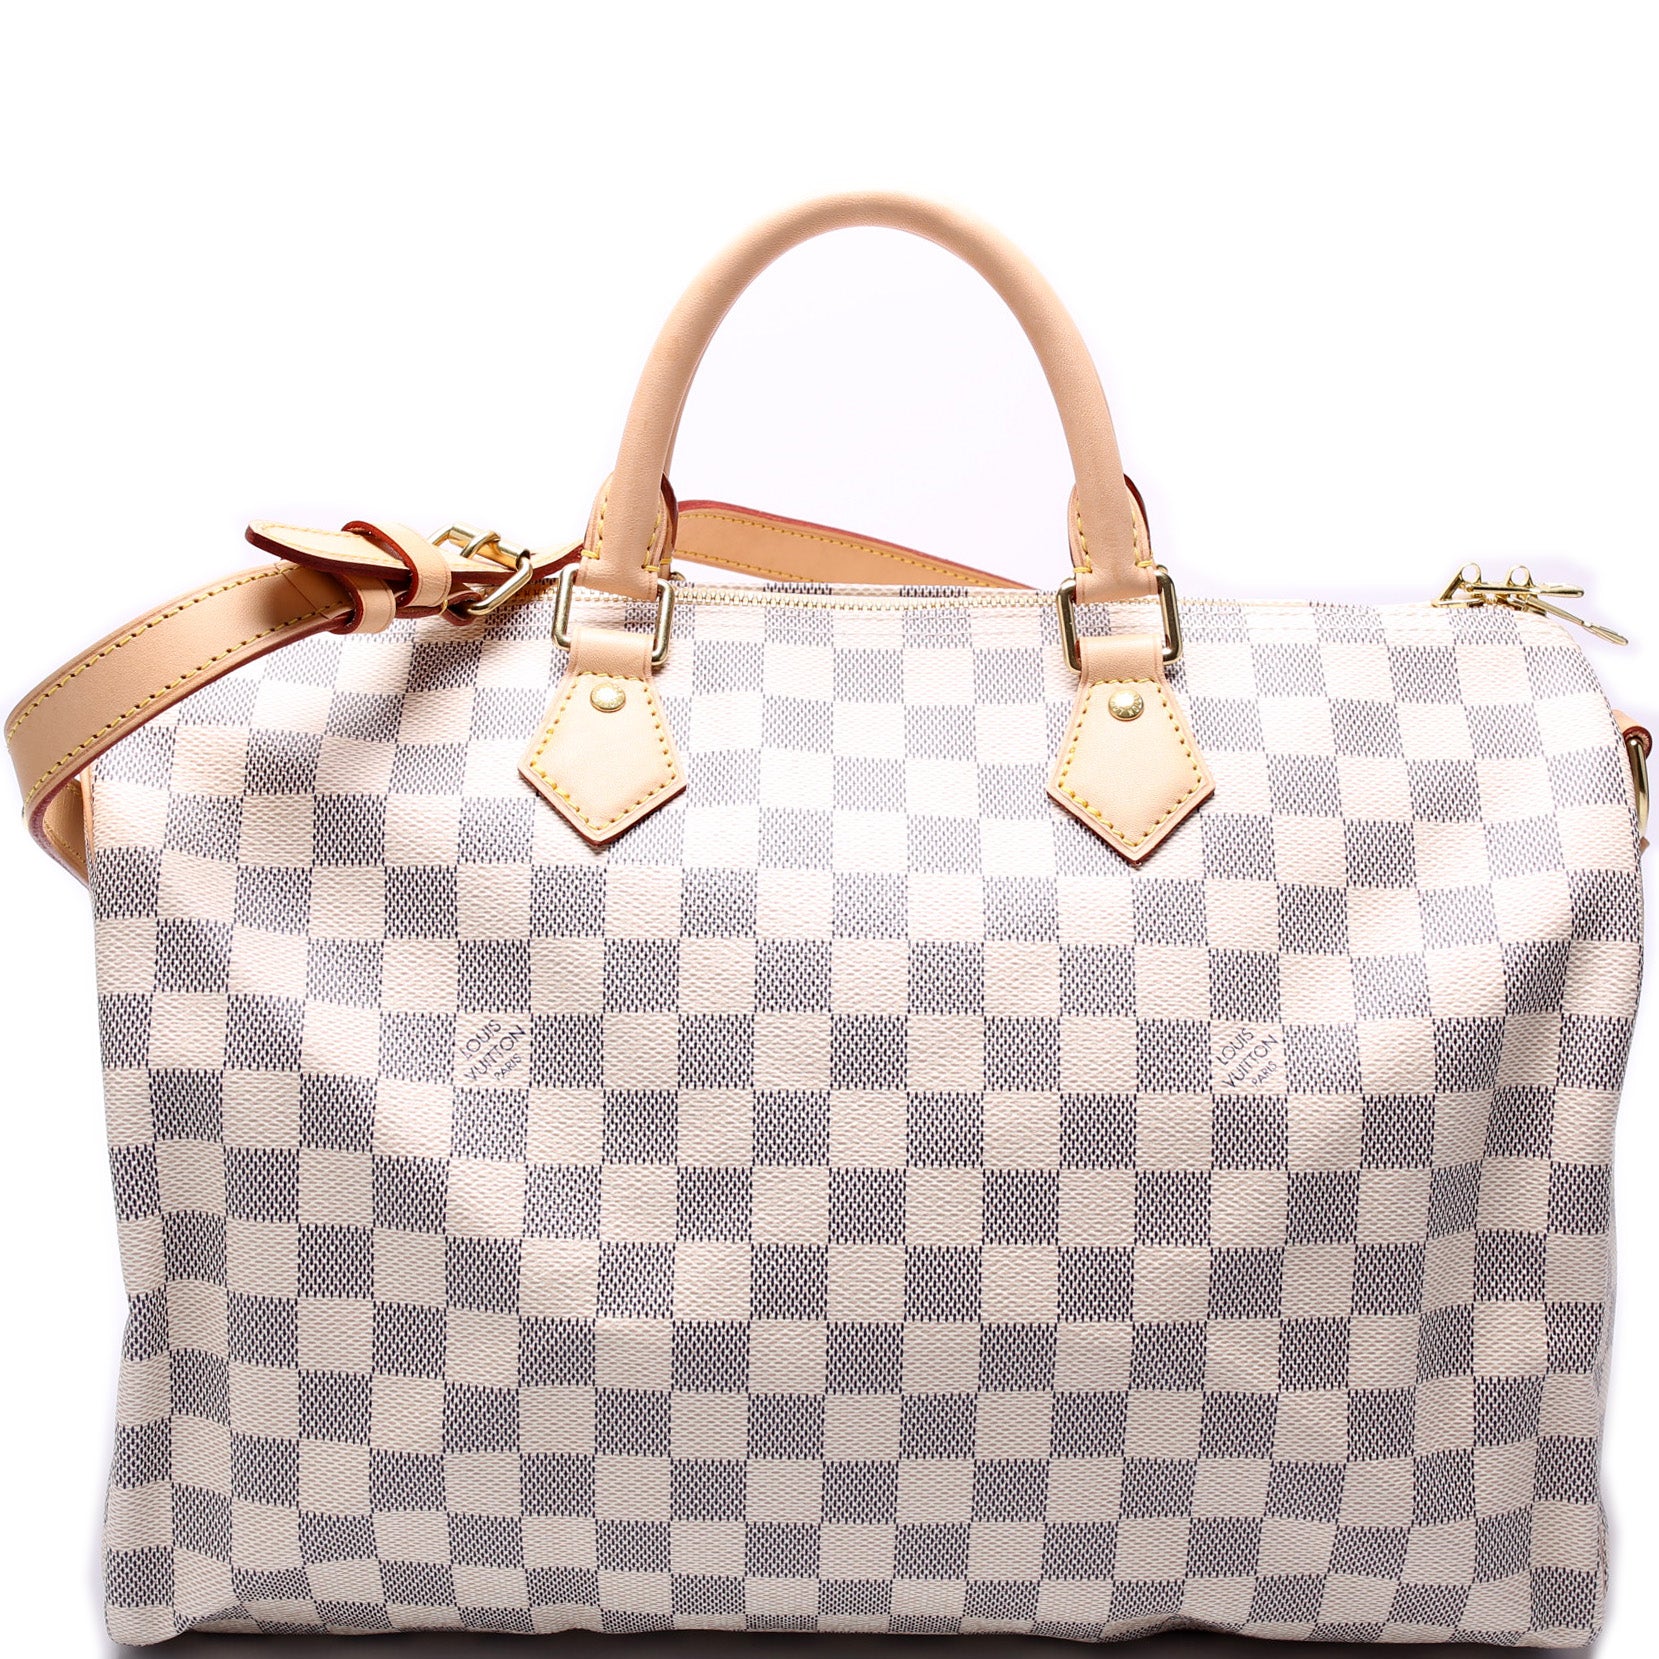 Louis Vuitton Damier Azur Speedy 35 Hand Bag